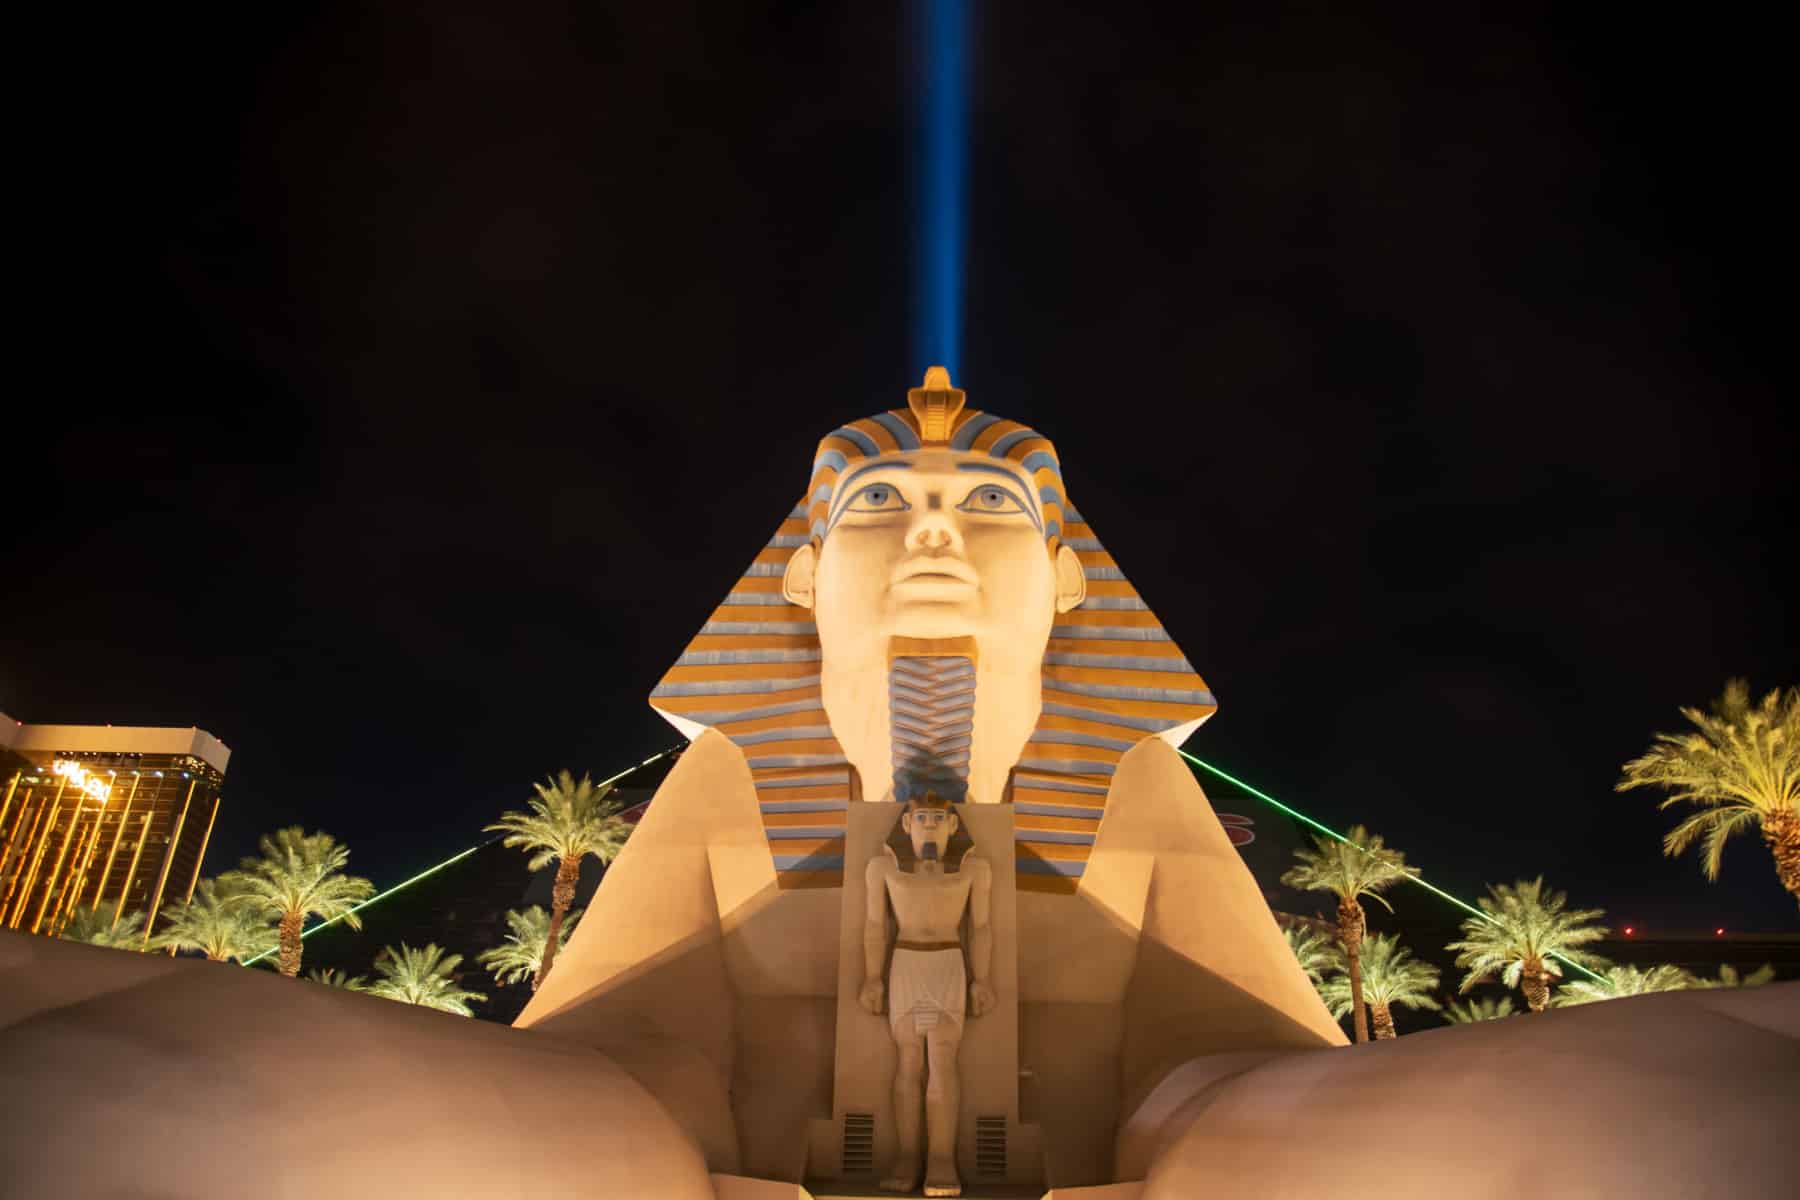 The Luxor Sphinx and light beam in Las Vegas.